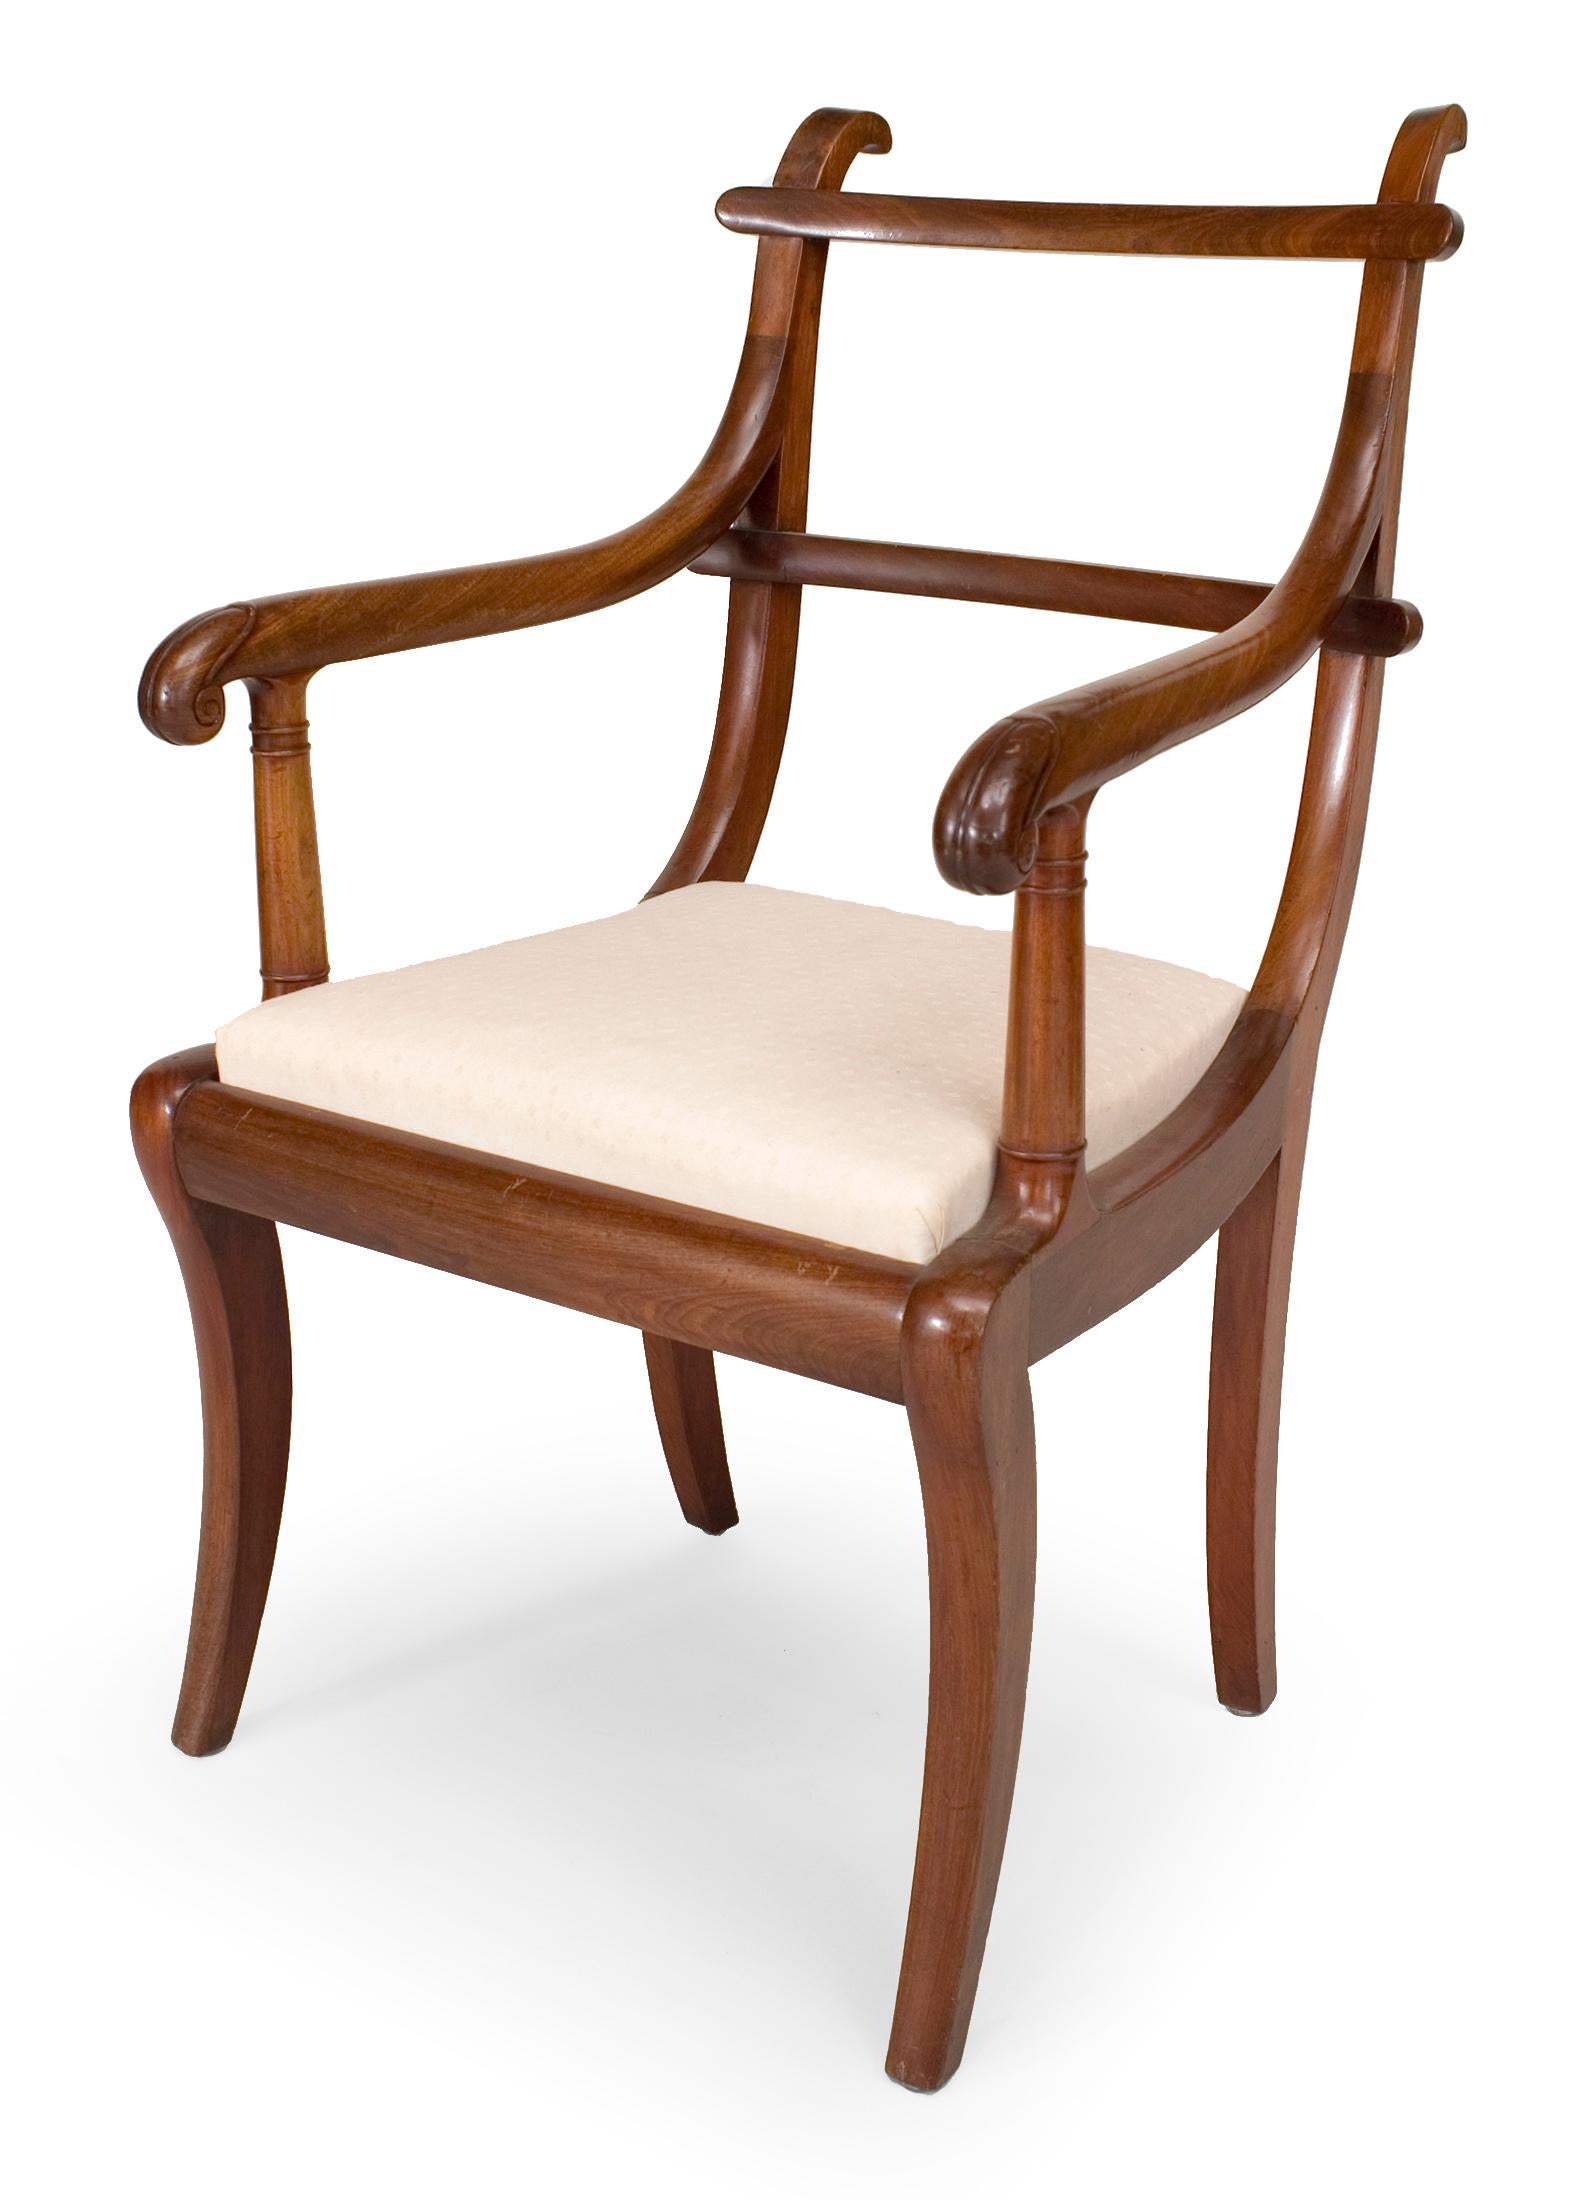 Zwei Sessel aus Mahagoni im englischen Regency-Stil (19. Jahrhundert) mit Leiterlehne und Schlupfsitzen.
 